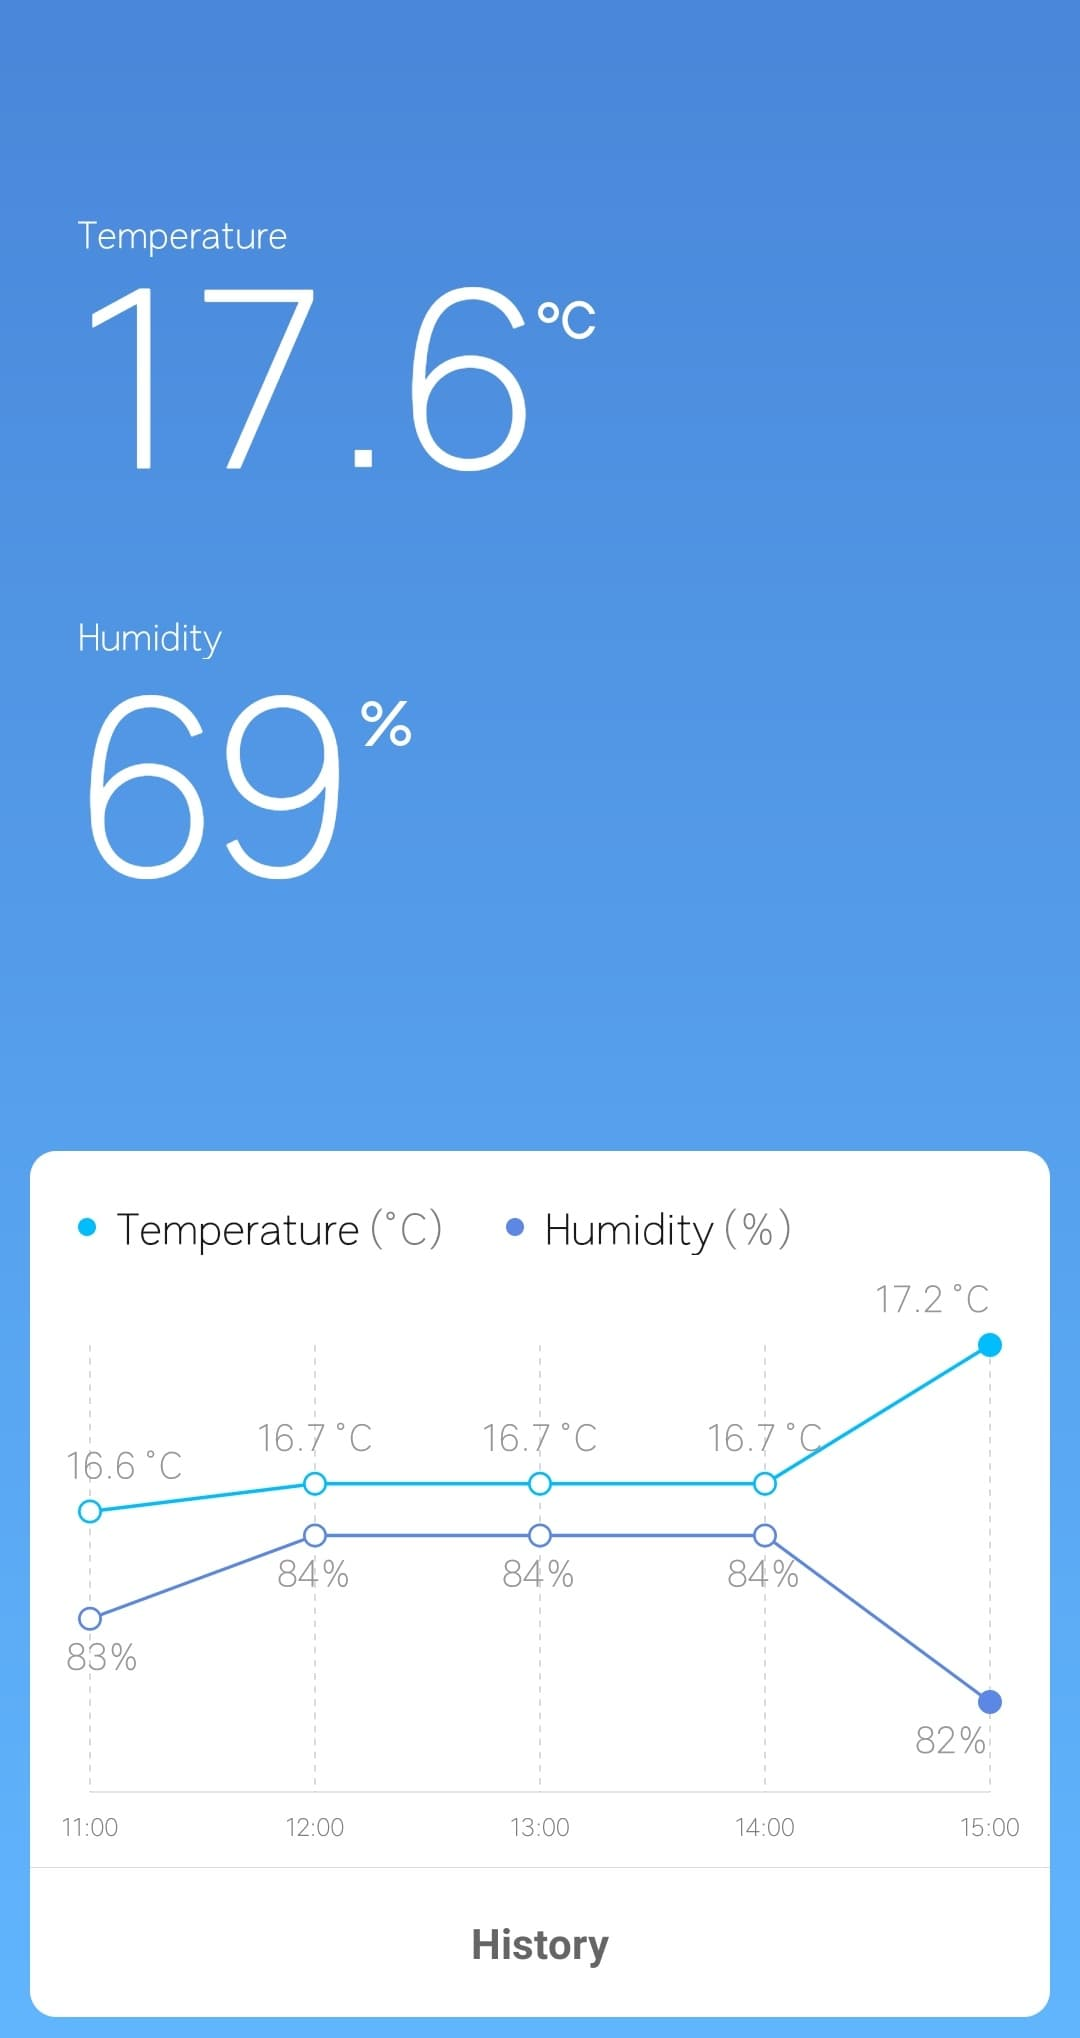 Mi Temperature and Humidity Monitor 2 wrong history data